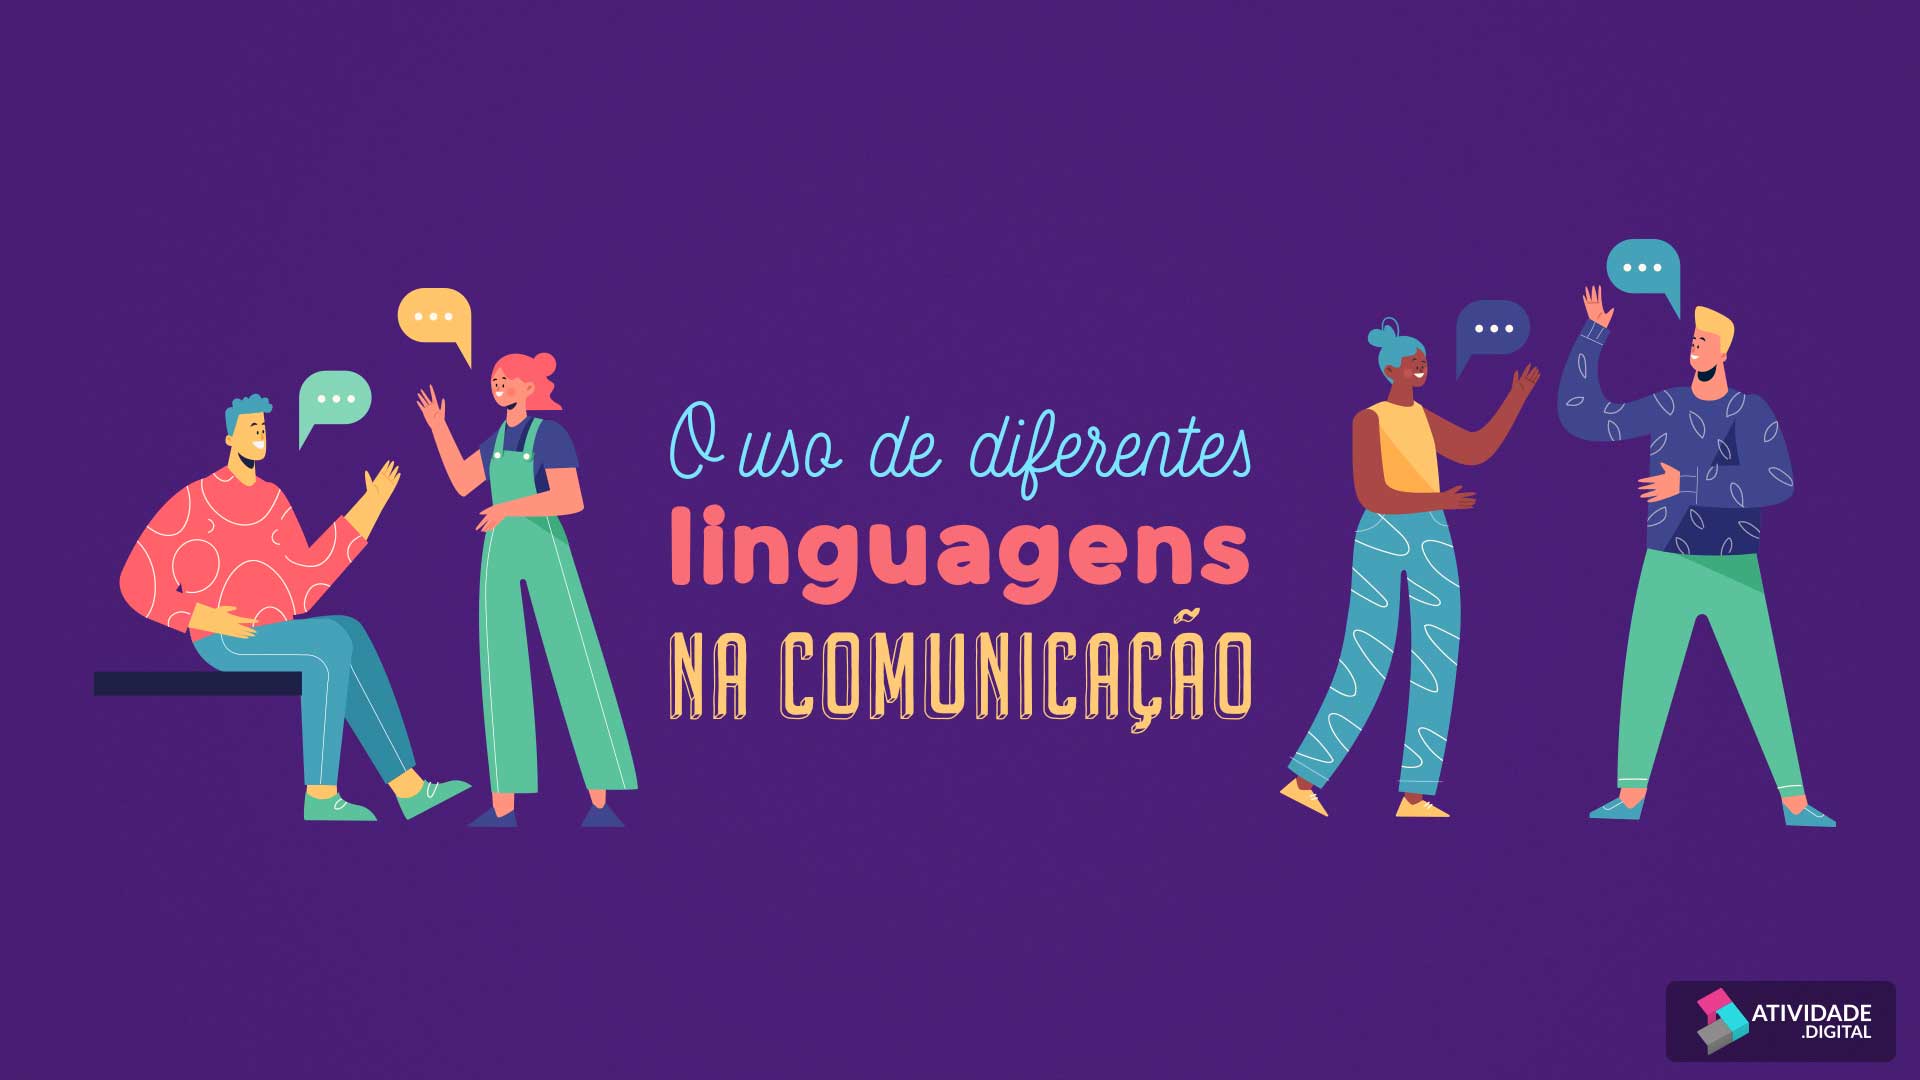 O uso de diferentes linguagens na comunicação